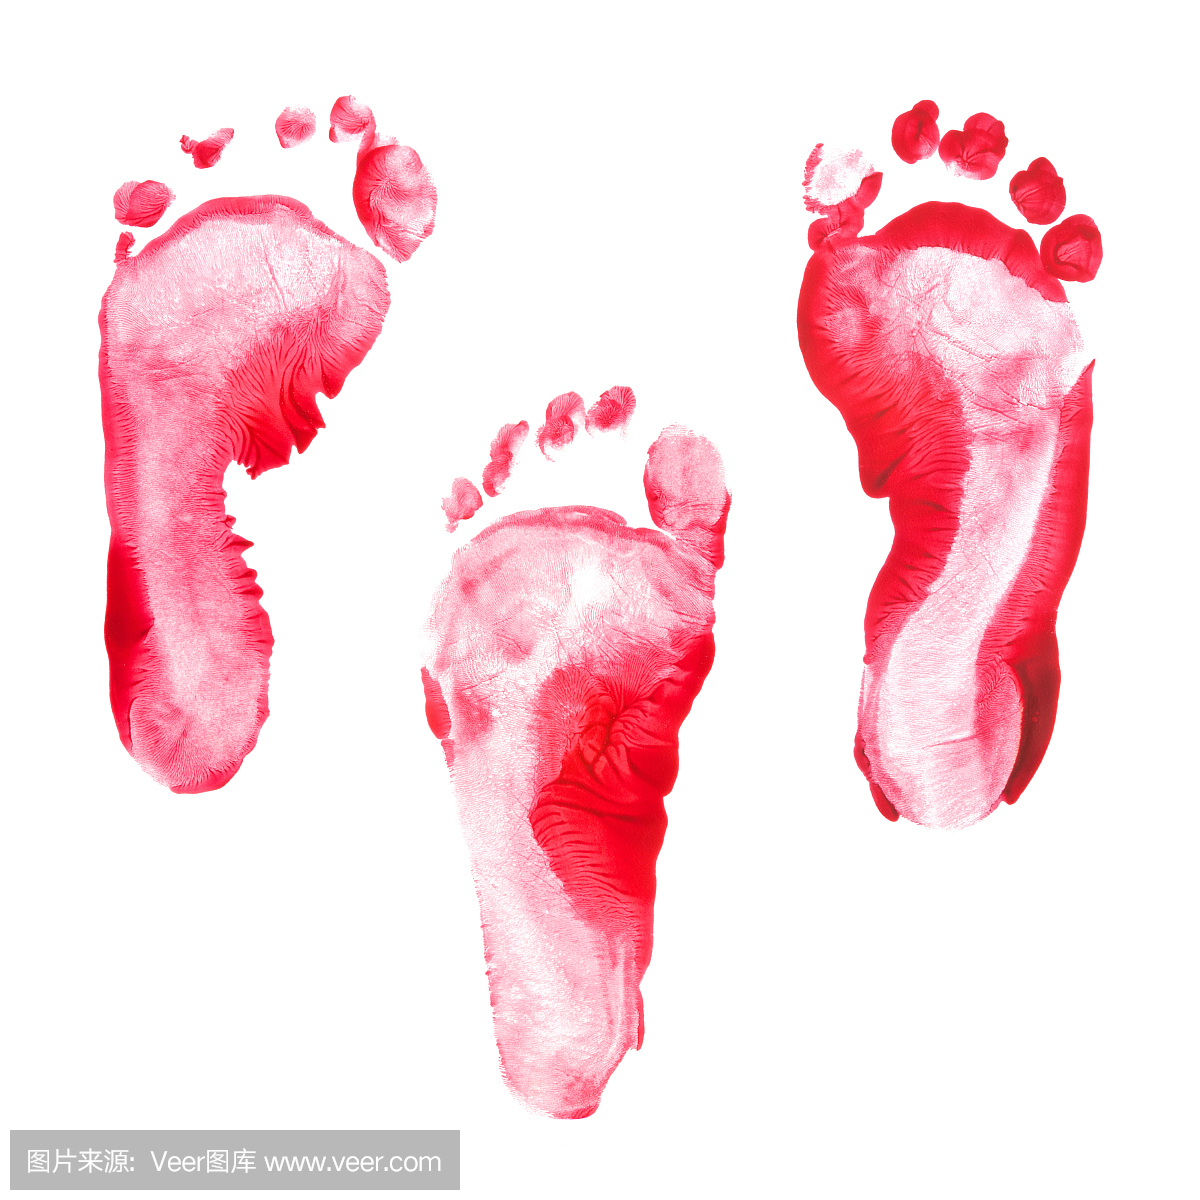 孩子脚印红色颜色设置隔离在白色背景上。很多